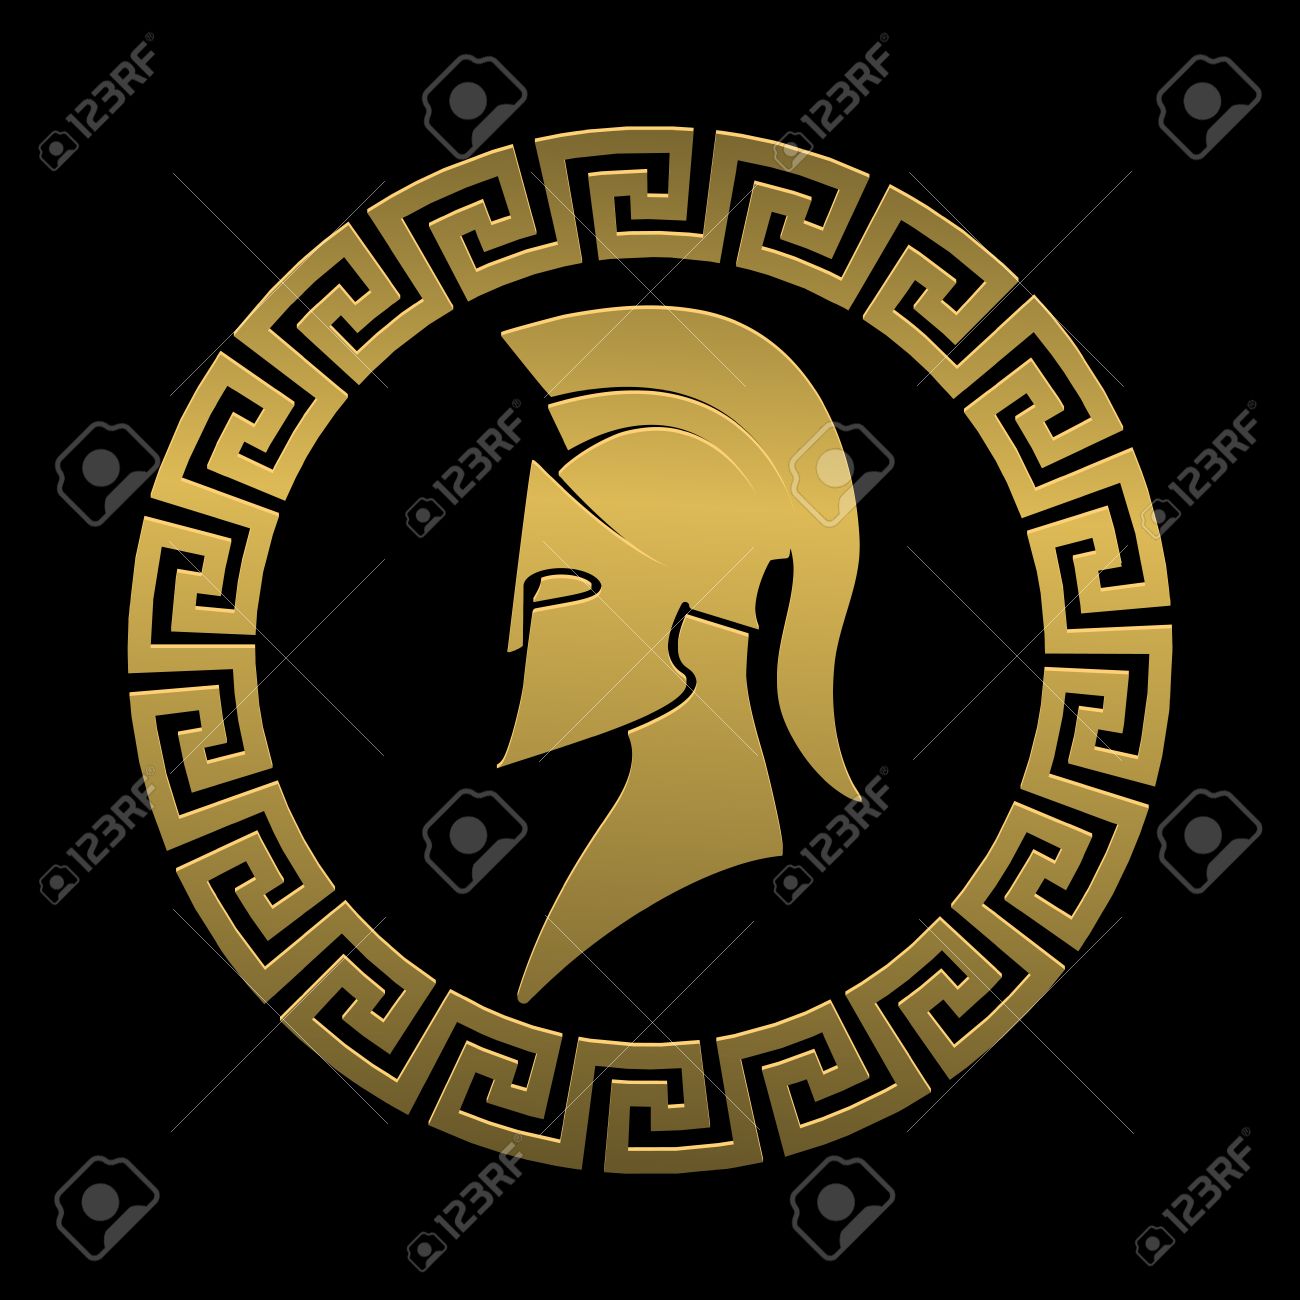 0_1568811523715_53928330-golden-symbol-spartan-warrior-on-a-black-background.jpg